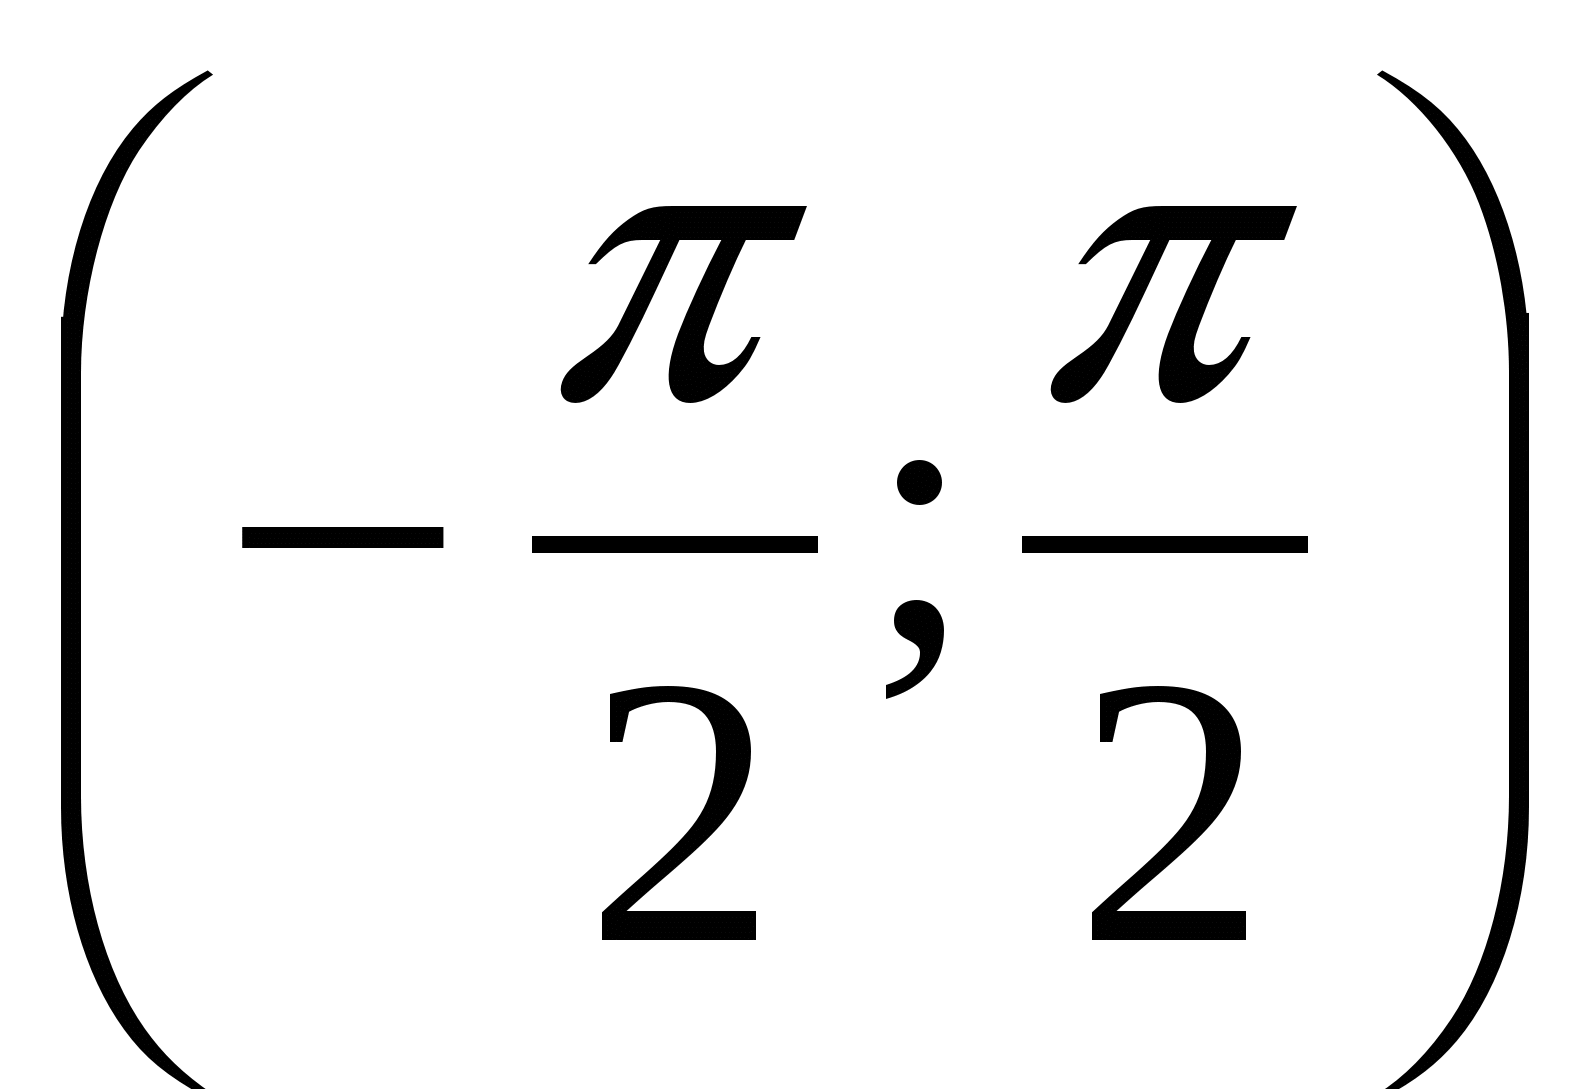 Конспект урока алгебры на тему: «Функции y = tgx, y = ctgx, их свойства и графики”(10 класс)